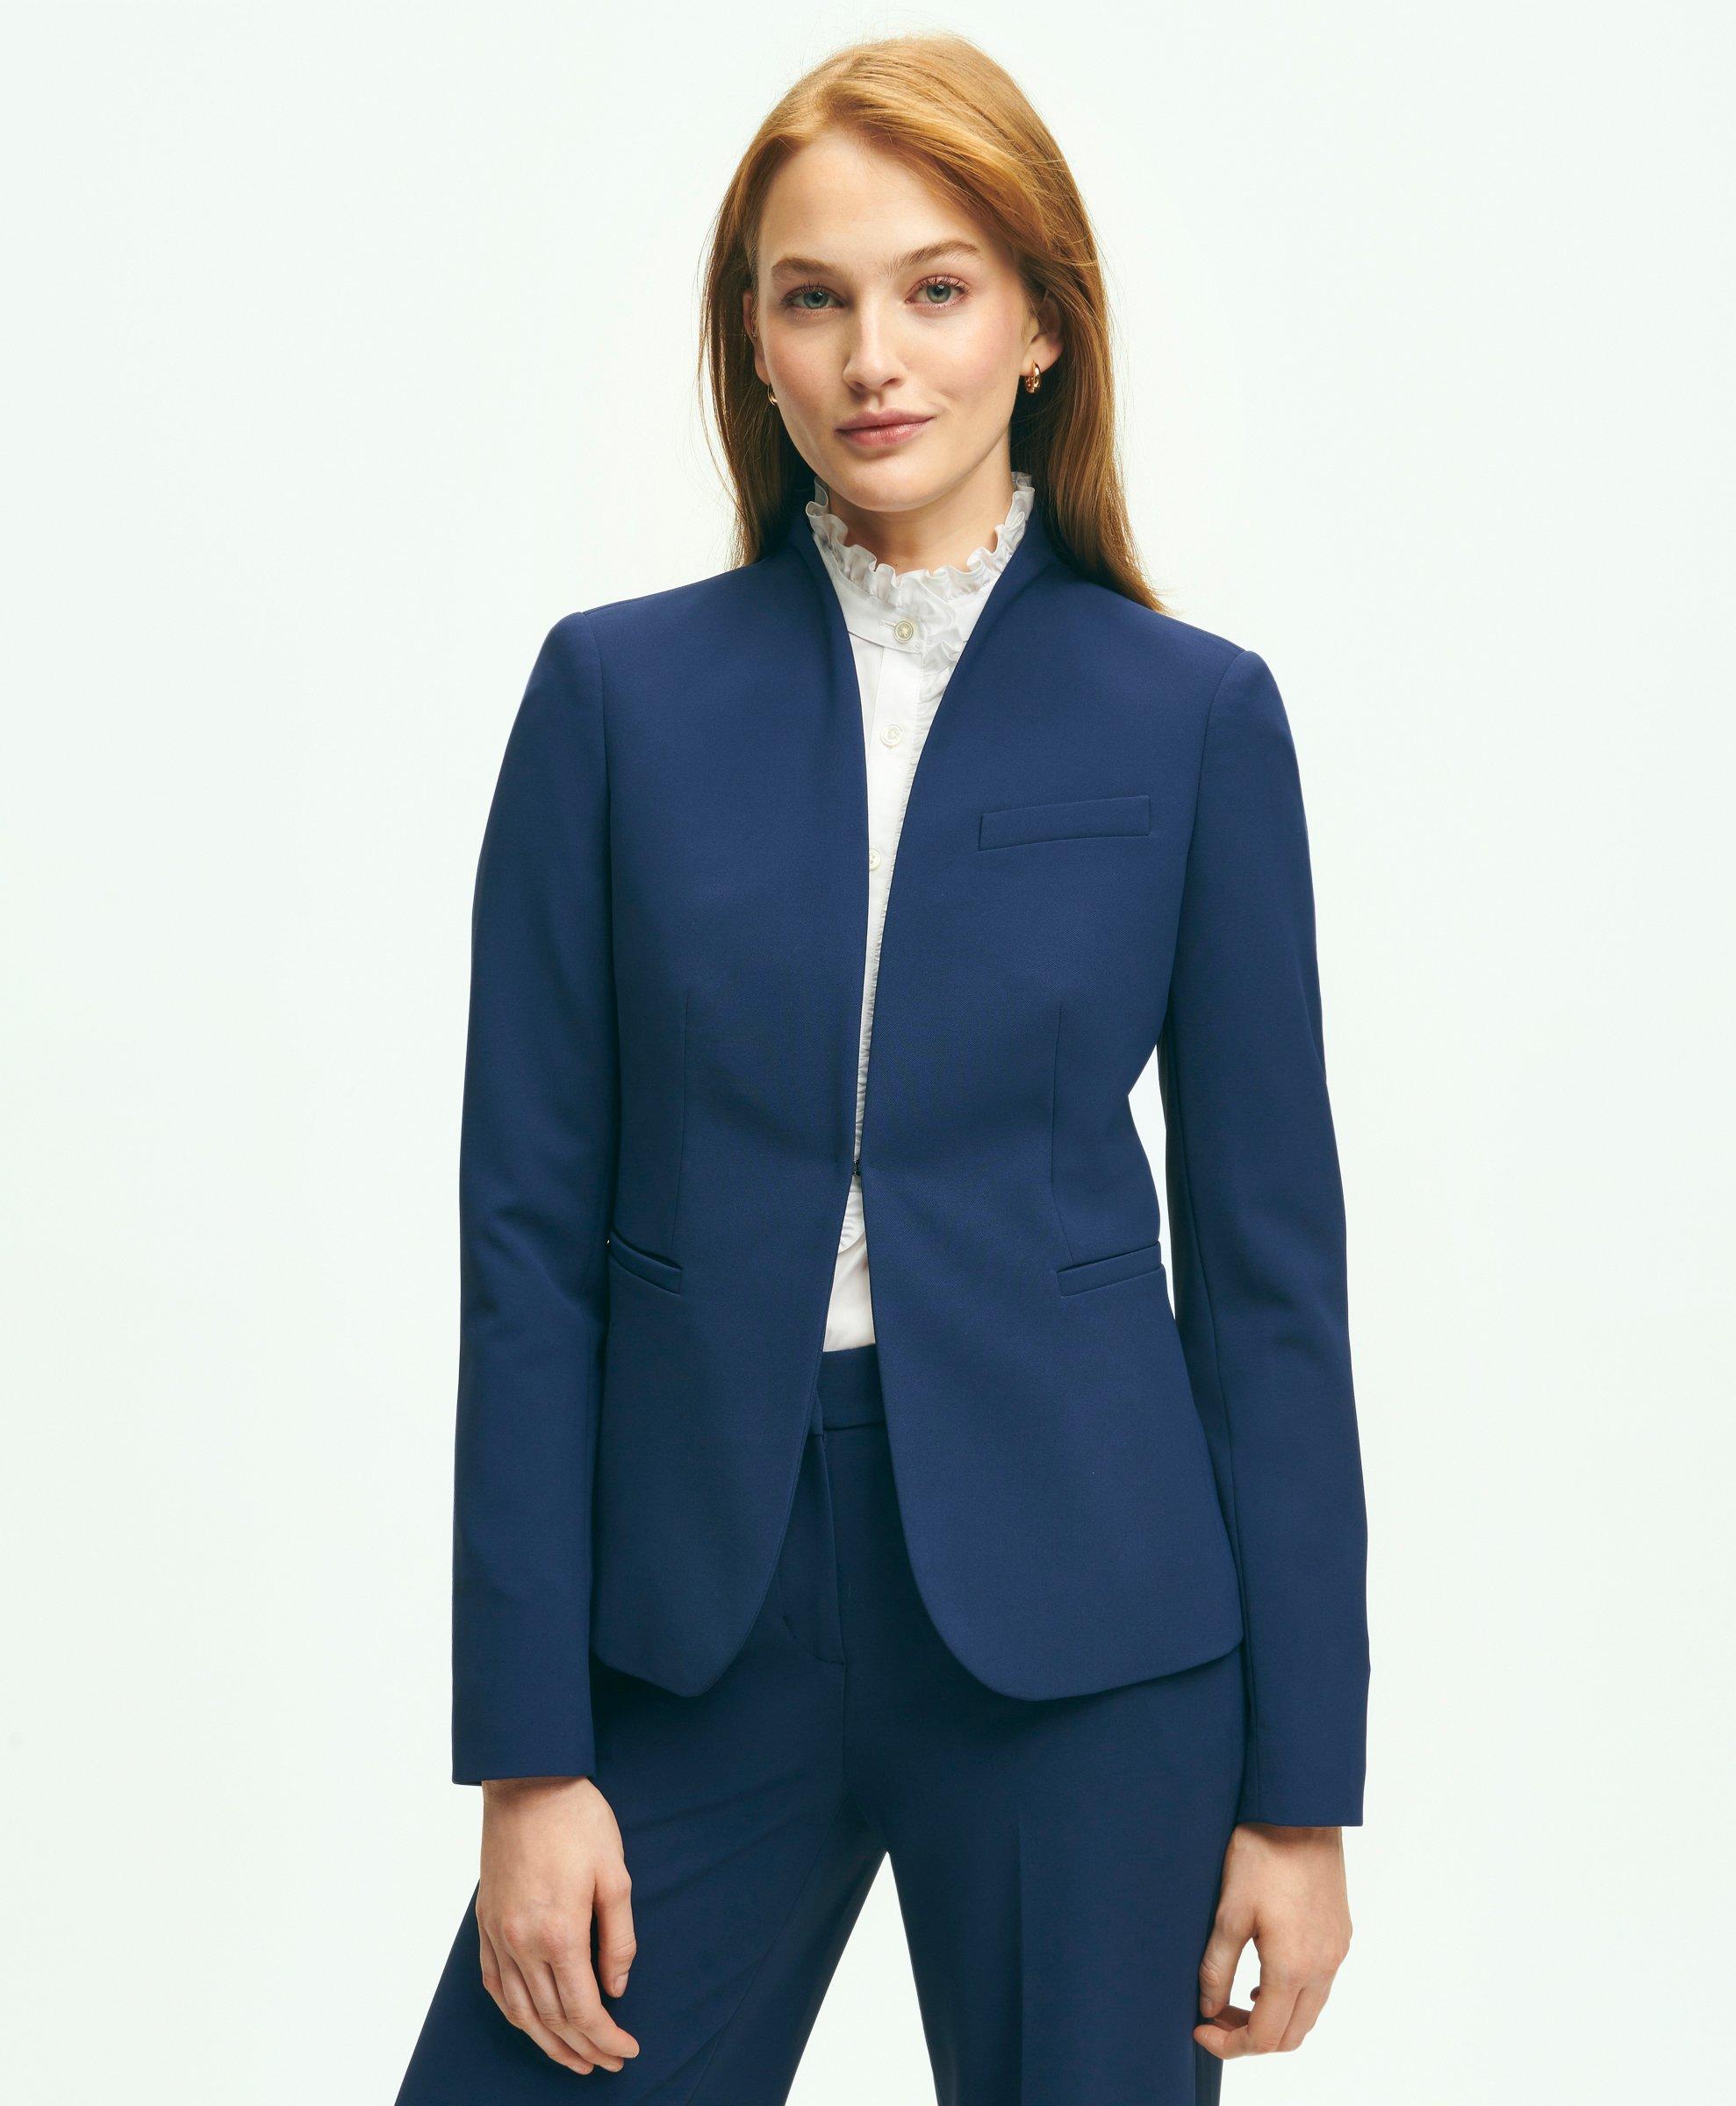 Unique Bargains Women's Short Sleeve Blazer Button Office Suit